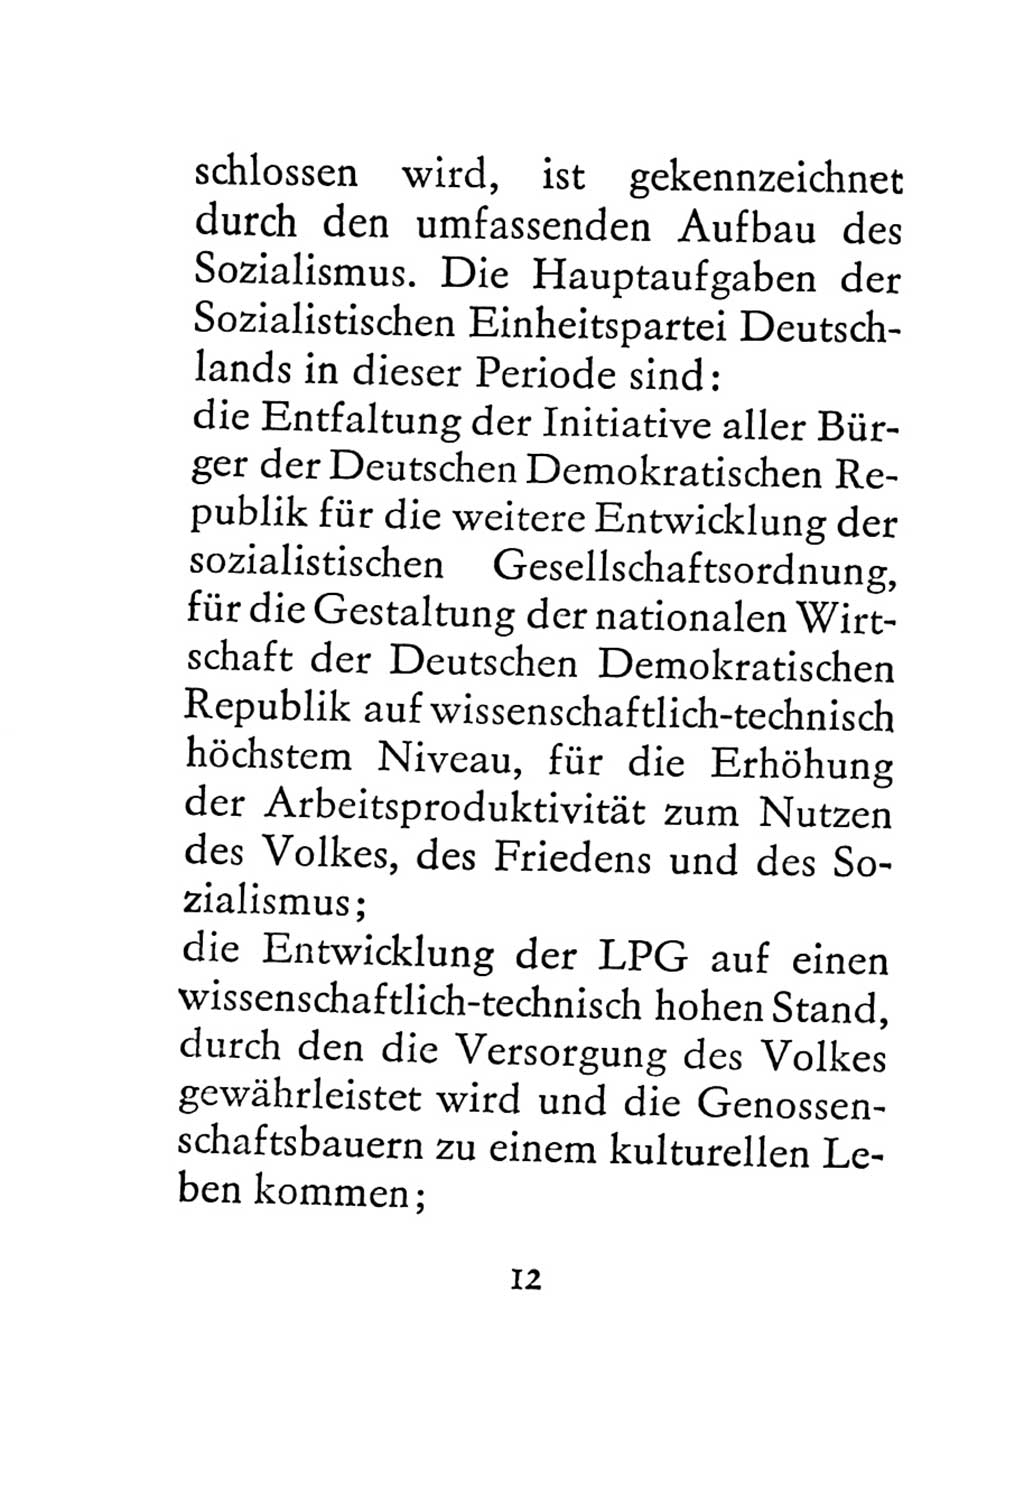 Statut der Sozialistischen Einheitspartei Deutschlands (SED) 1967, Seite 12 (St. SED DDR 1967, S. 12)